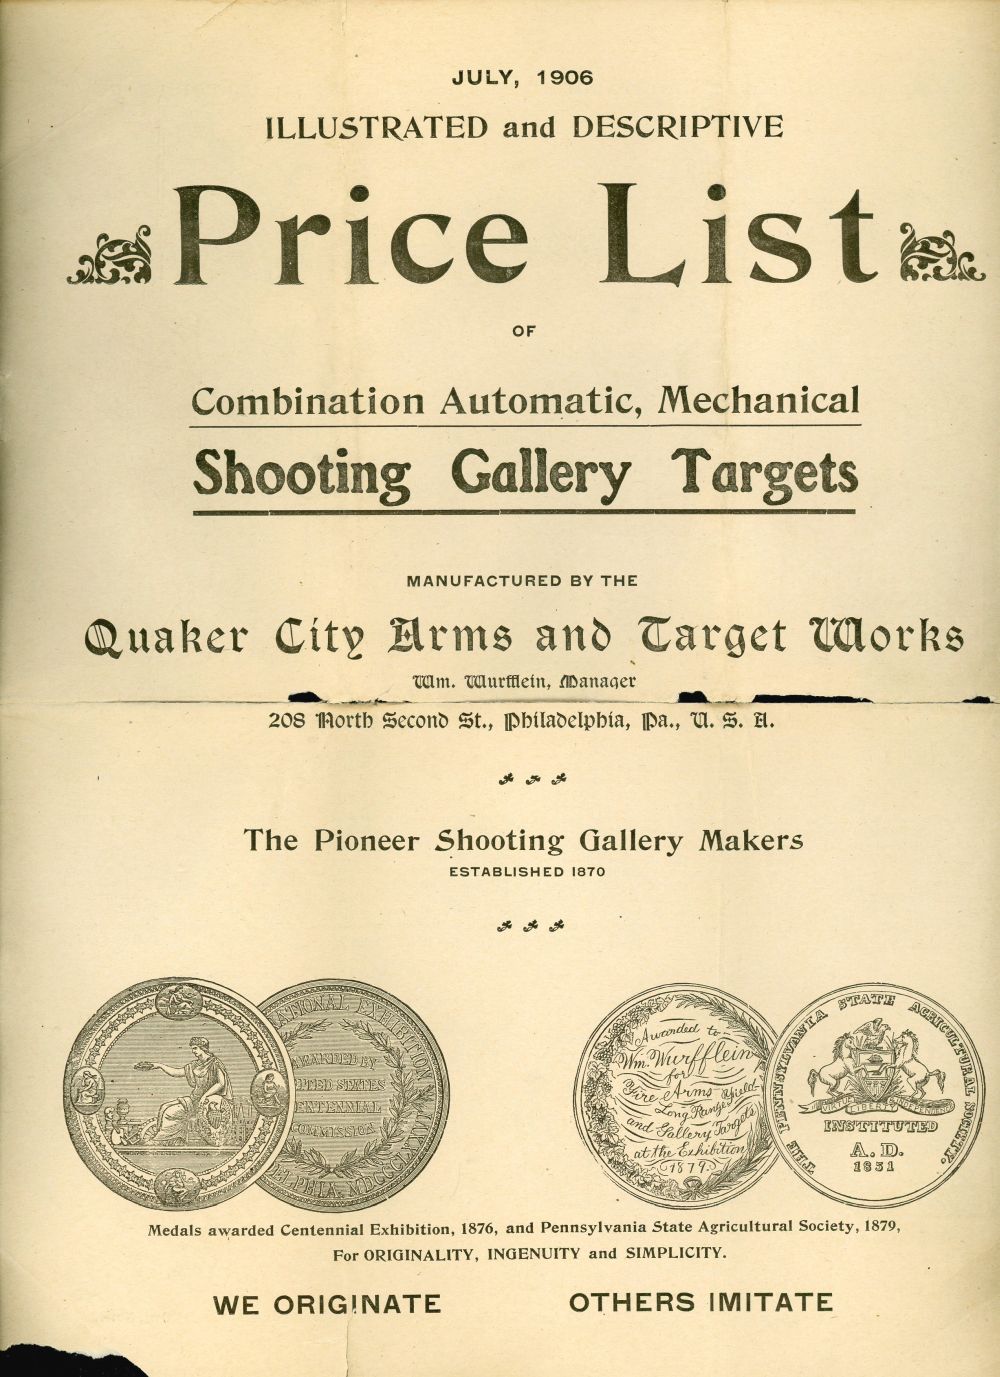 QUAKER CITY SHOOTING GALLERY TRADE CATALOGS, 1908-1913